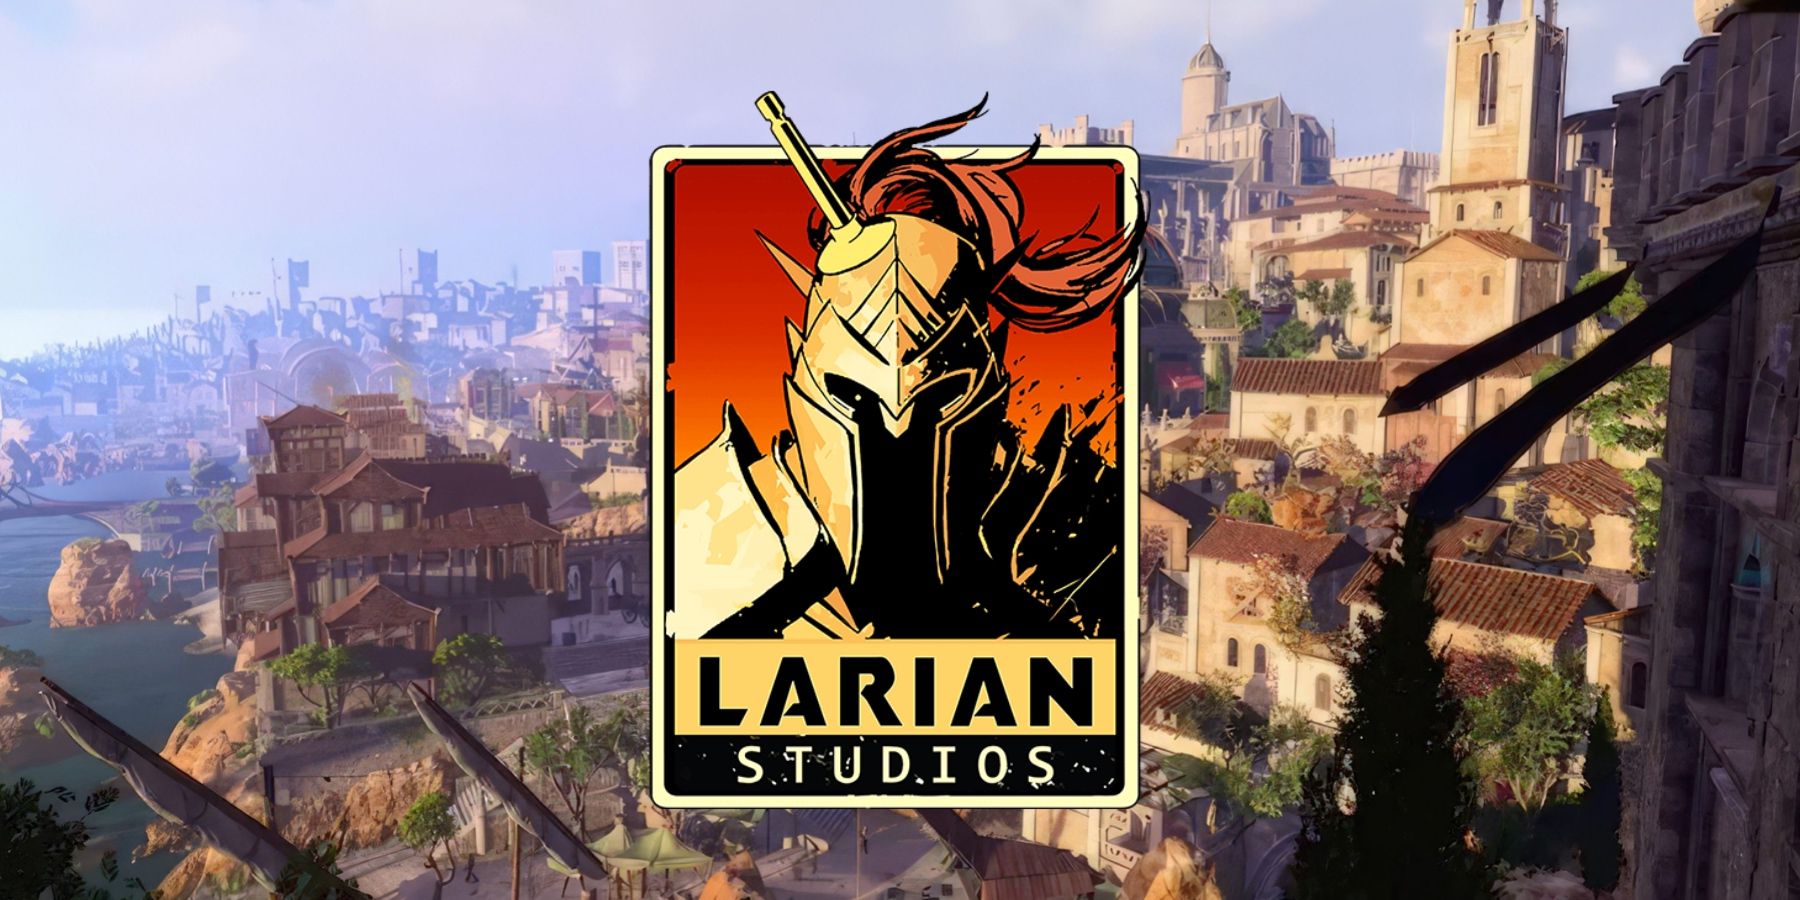 baldur's gate 3 dev larian helped fund one of 2019's best games